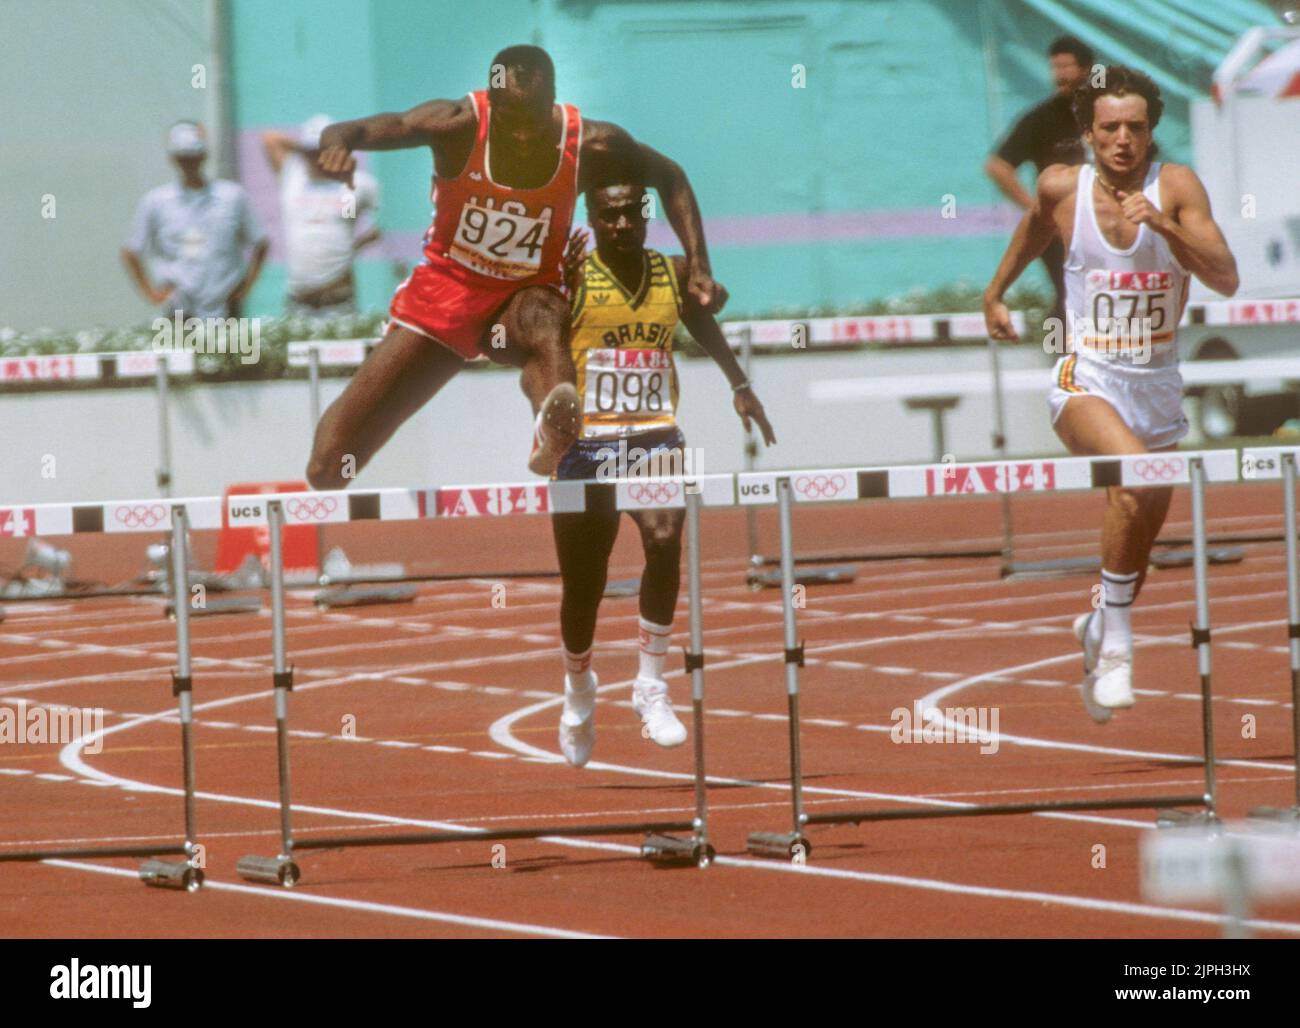 JUEGOS OLÍMPICOS DE VERANO EN LOS ANGELES 1984 EDWIN MOSES USA 400M HURDLE Foto de stock